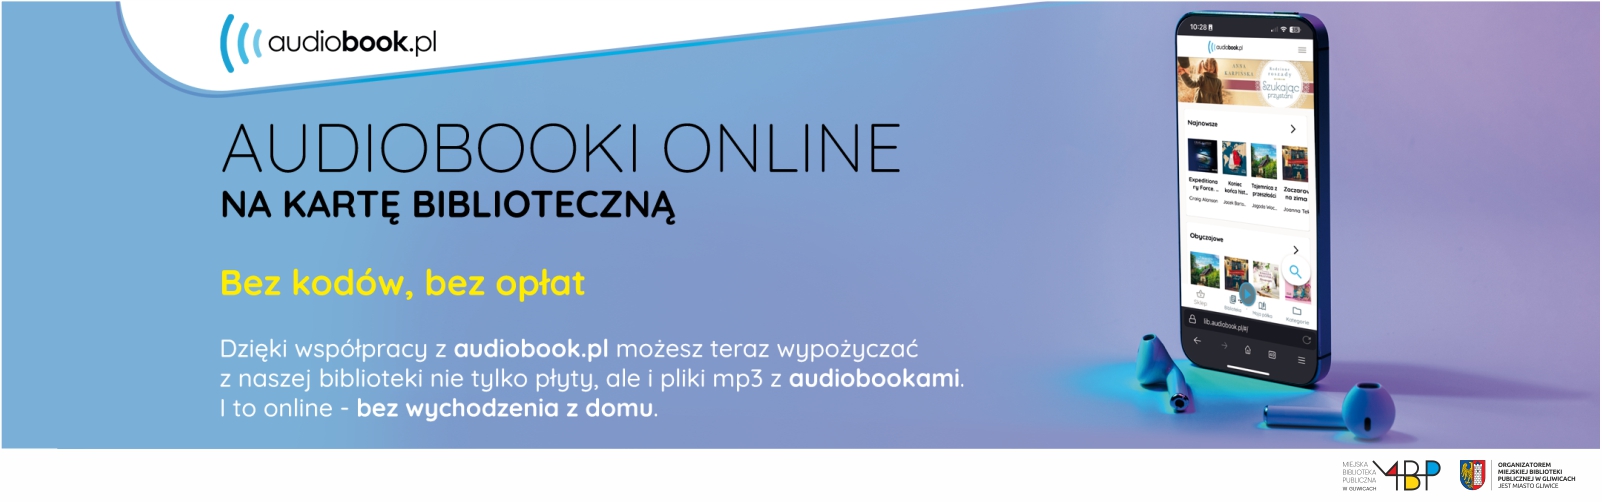 informacja o audiobookach online, grafika: smartfon